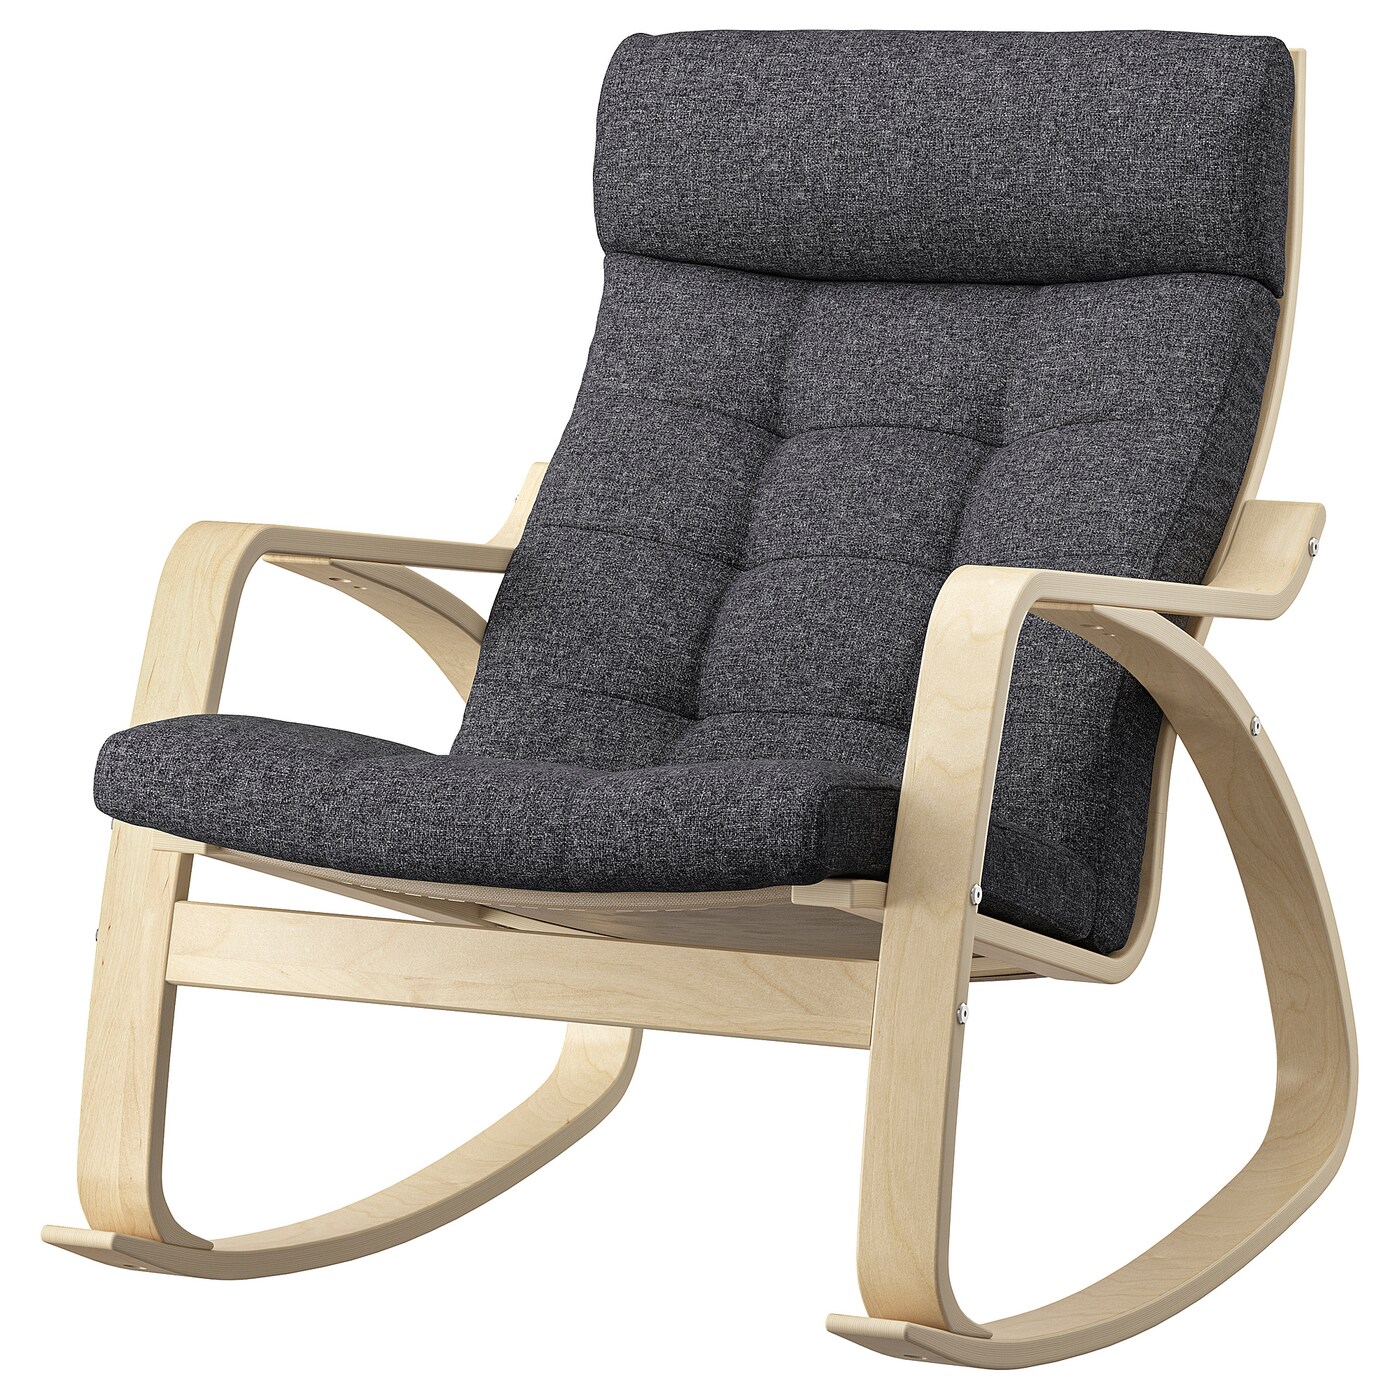 ПОЭНГ Кресло-качалка, березовый шпон/Гуннаред темно-серый POÄNG IKEA кресло качалка с деревом 881 40r